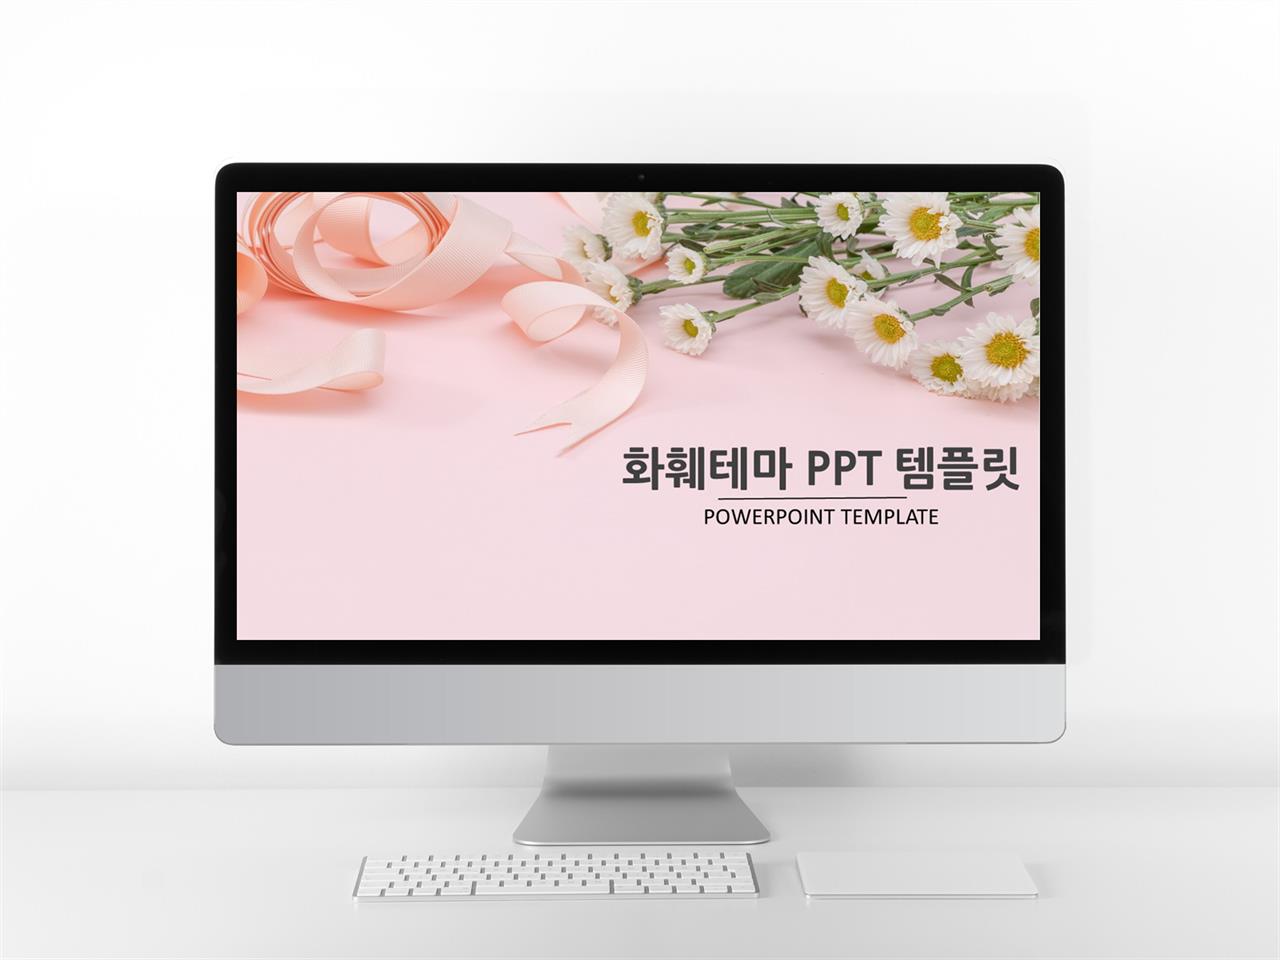 동식물, 애완동물 핑크색 예쁜 발표용 POWERPOINT탬플릿 다운 미리보기